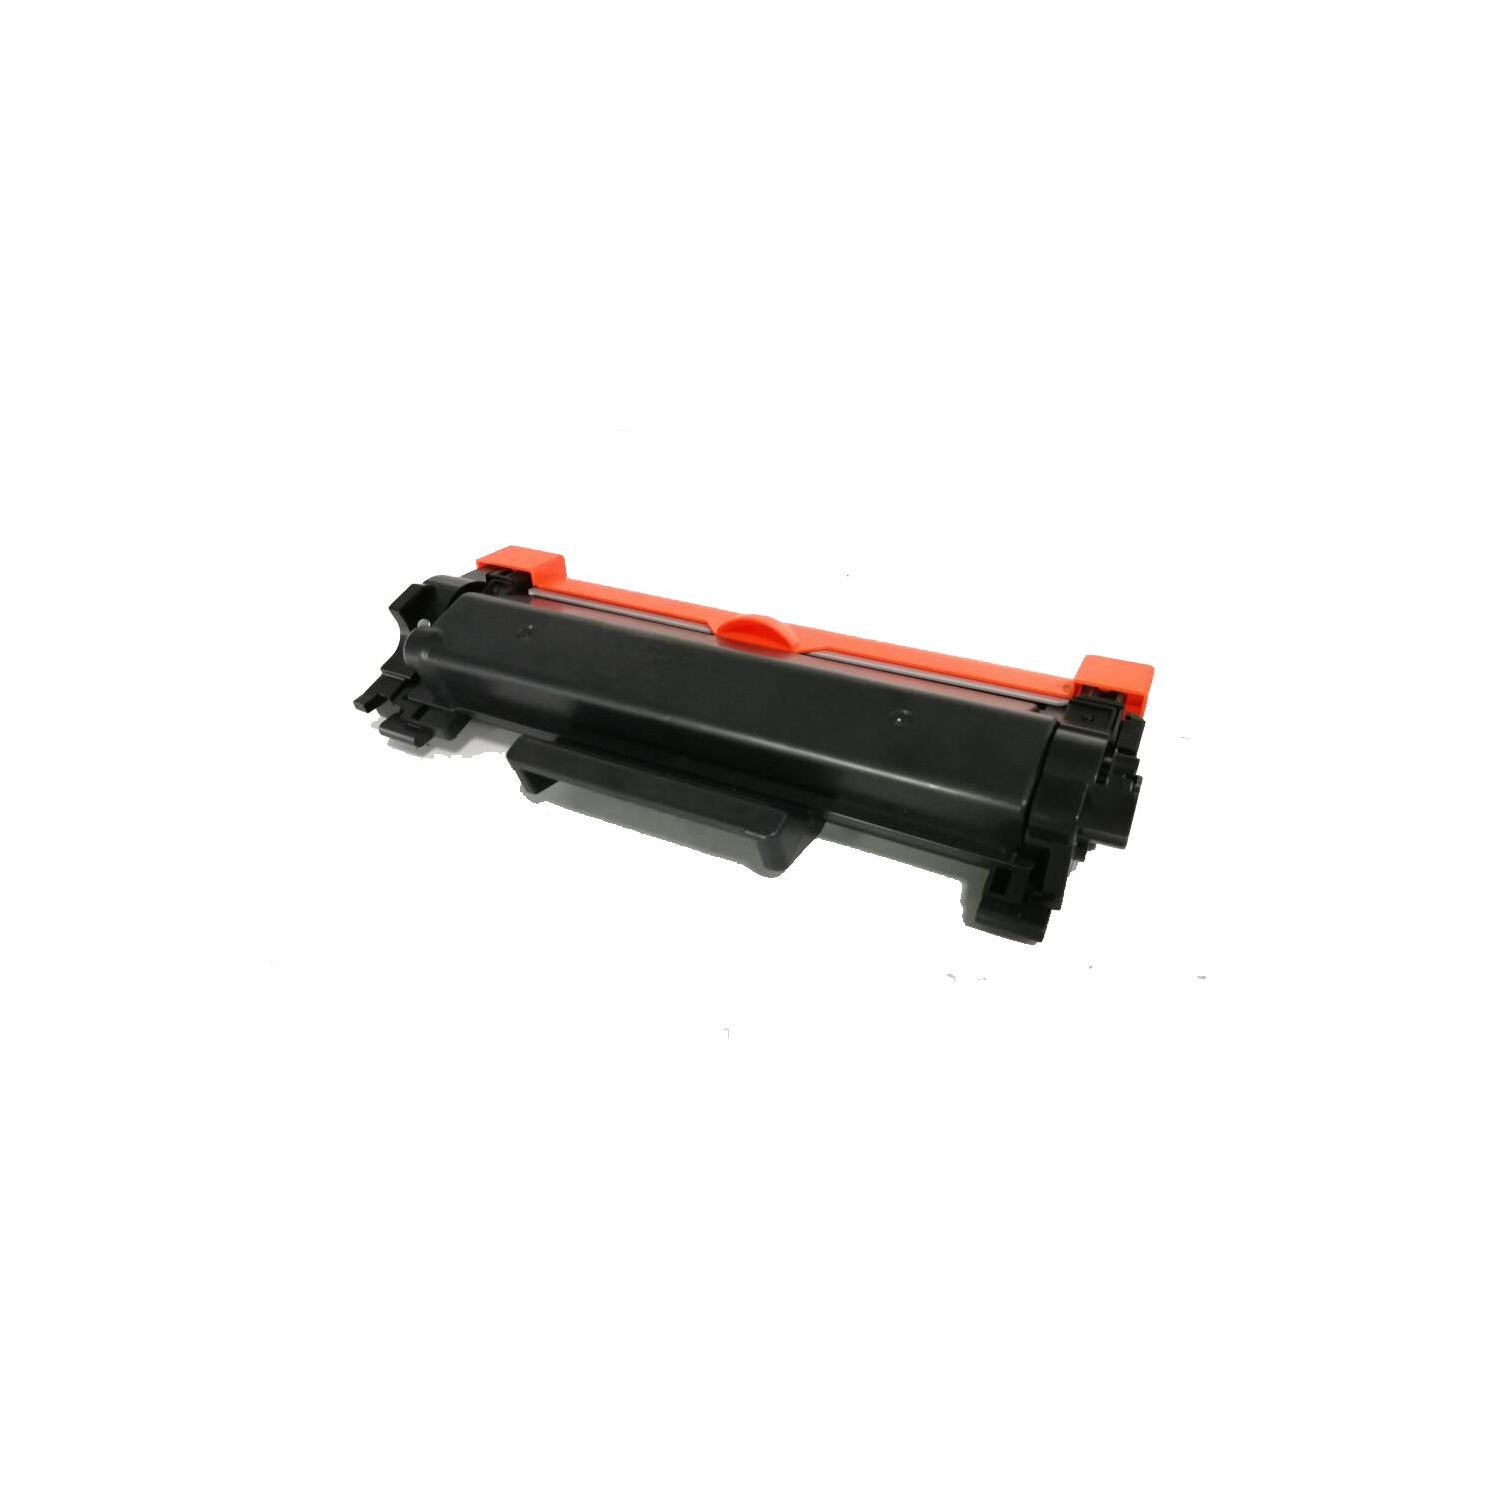 Max Saving - Replacement TN760 High Yield Toner Cartridge For Brother DCP-L2550 HL-L2350 MFC-L2710 HL-L2370DW HL-L2390DW MFC-L2710DW MFC-L2730 TN730